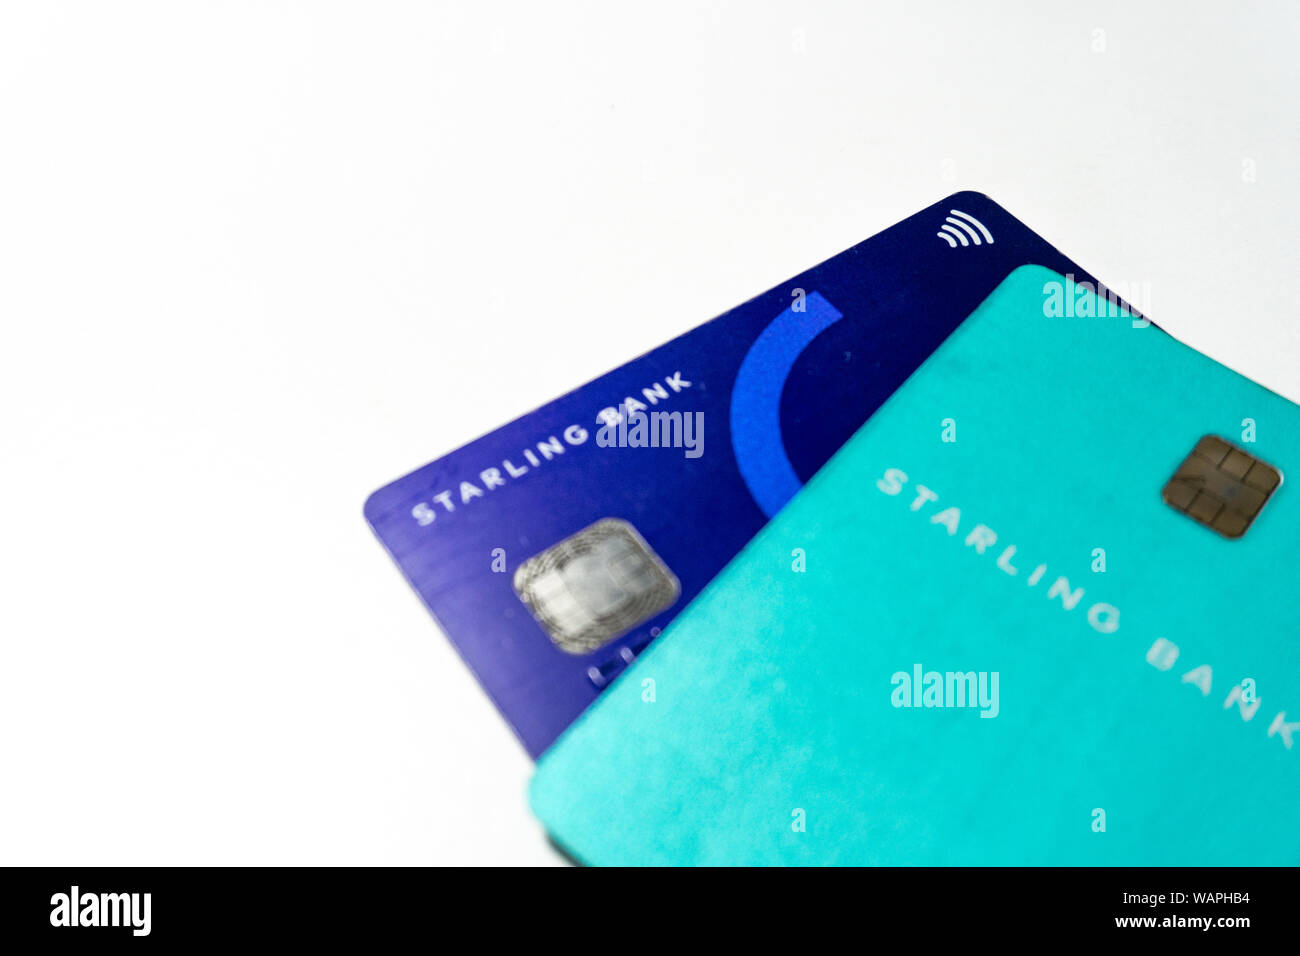 Kreditkarten das neue digitale Bank Starling Bank emittiert auf weißem Hintergrund Stockfoto